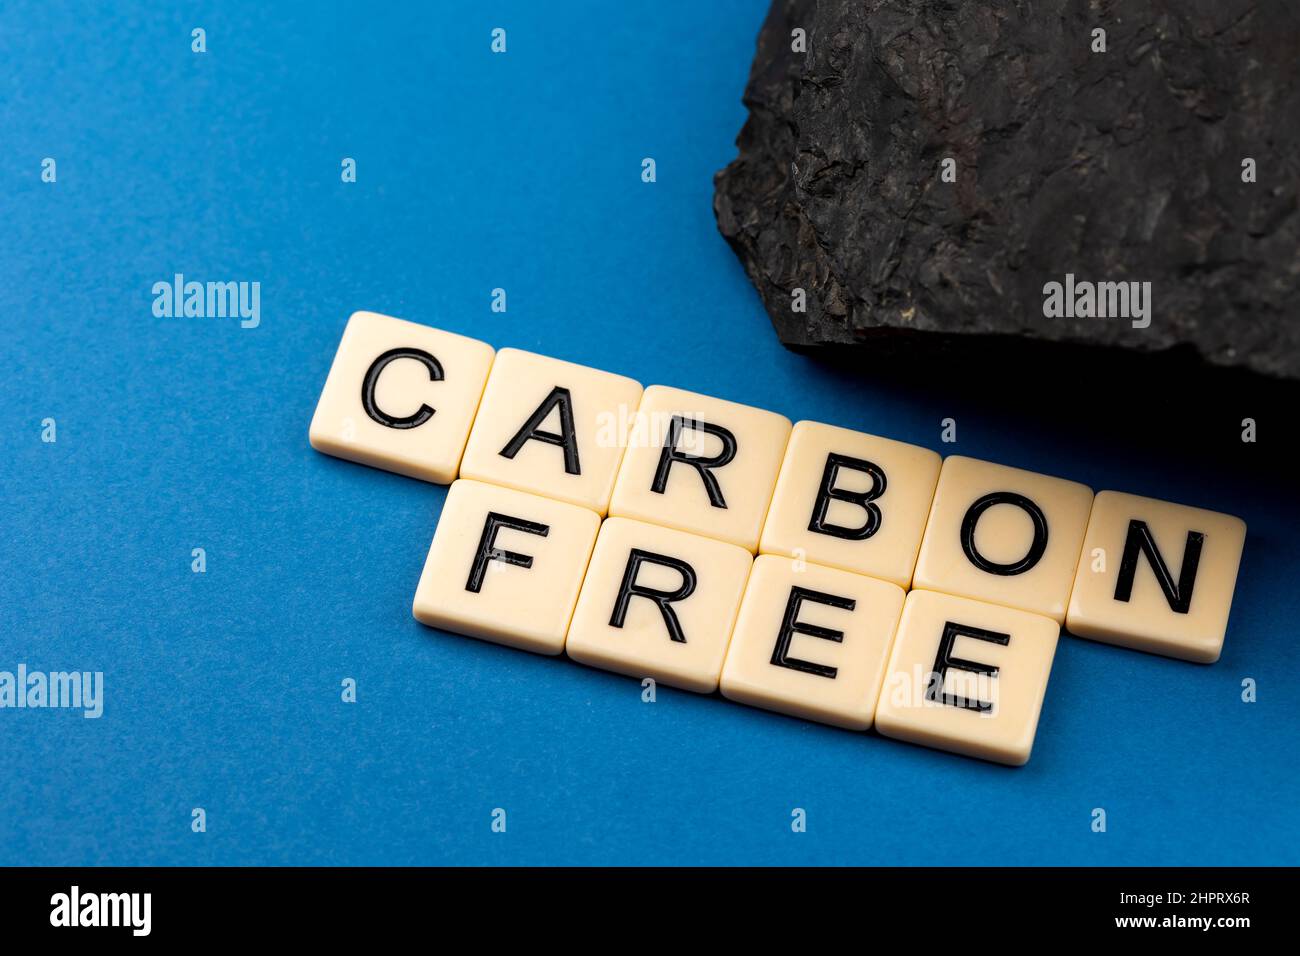 Un morceau de charbon disposé sur fond bleu avec la phrase "sans carbone" composée de lettres. Photo prise sous une lumière artificielle douce Banque D'Images